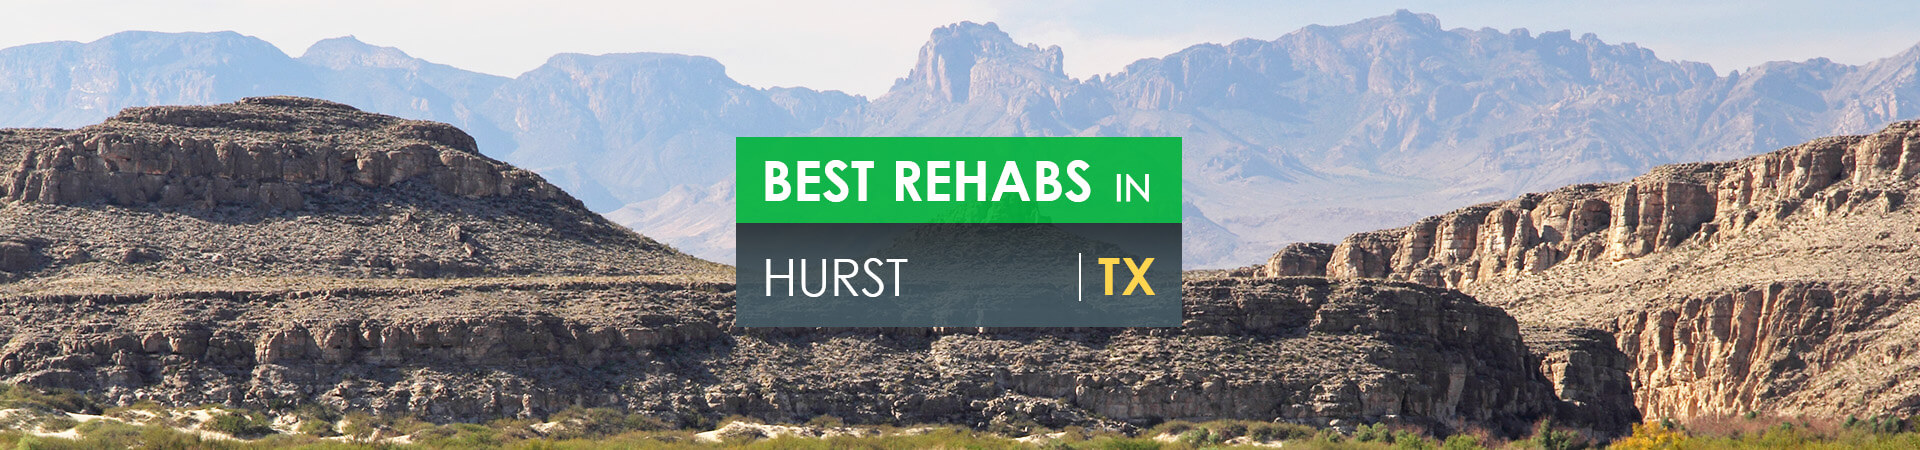 Best rehabs in Hurst, TX